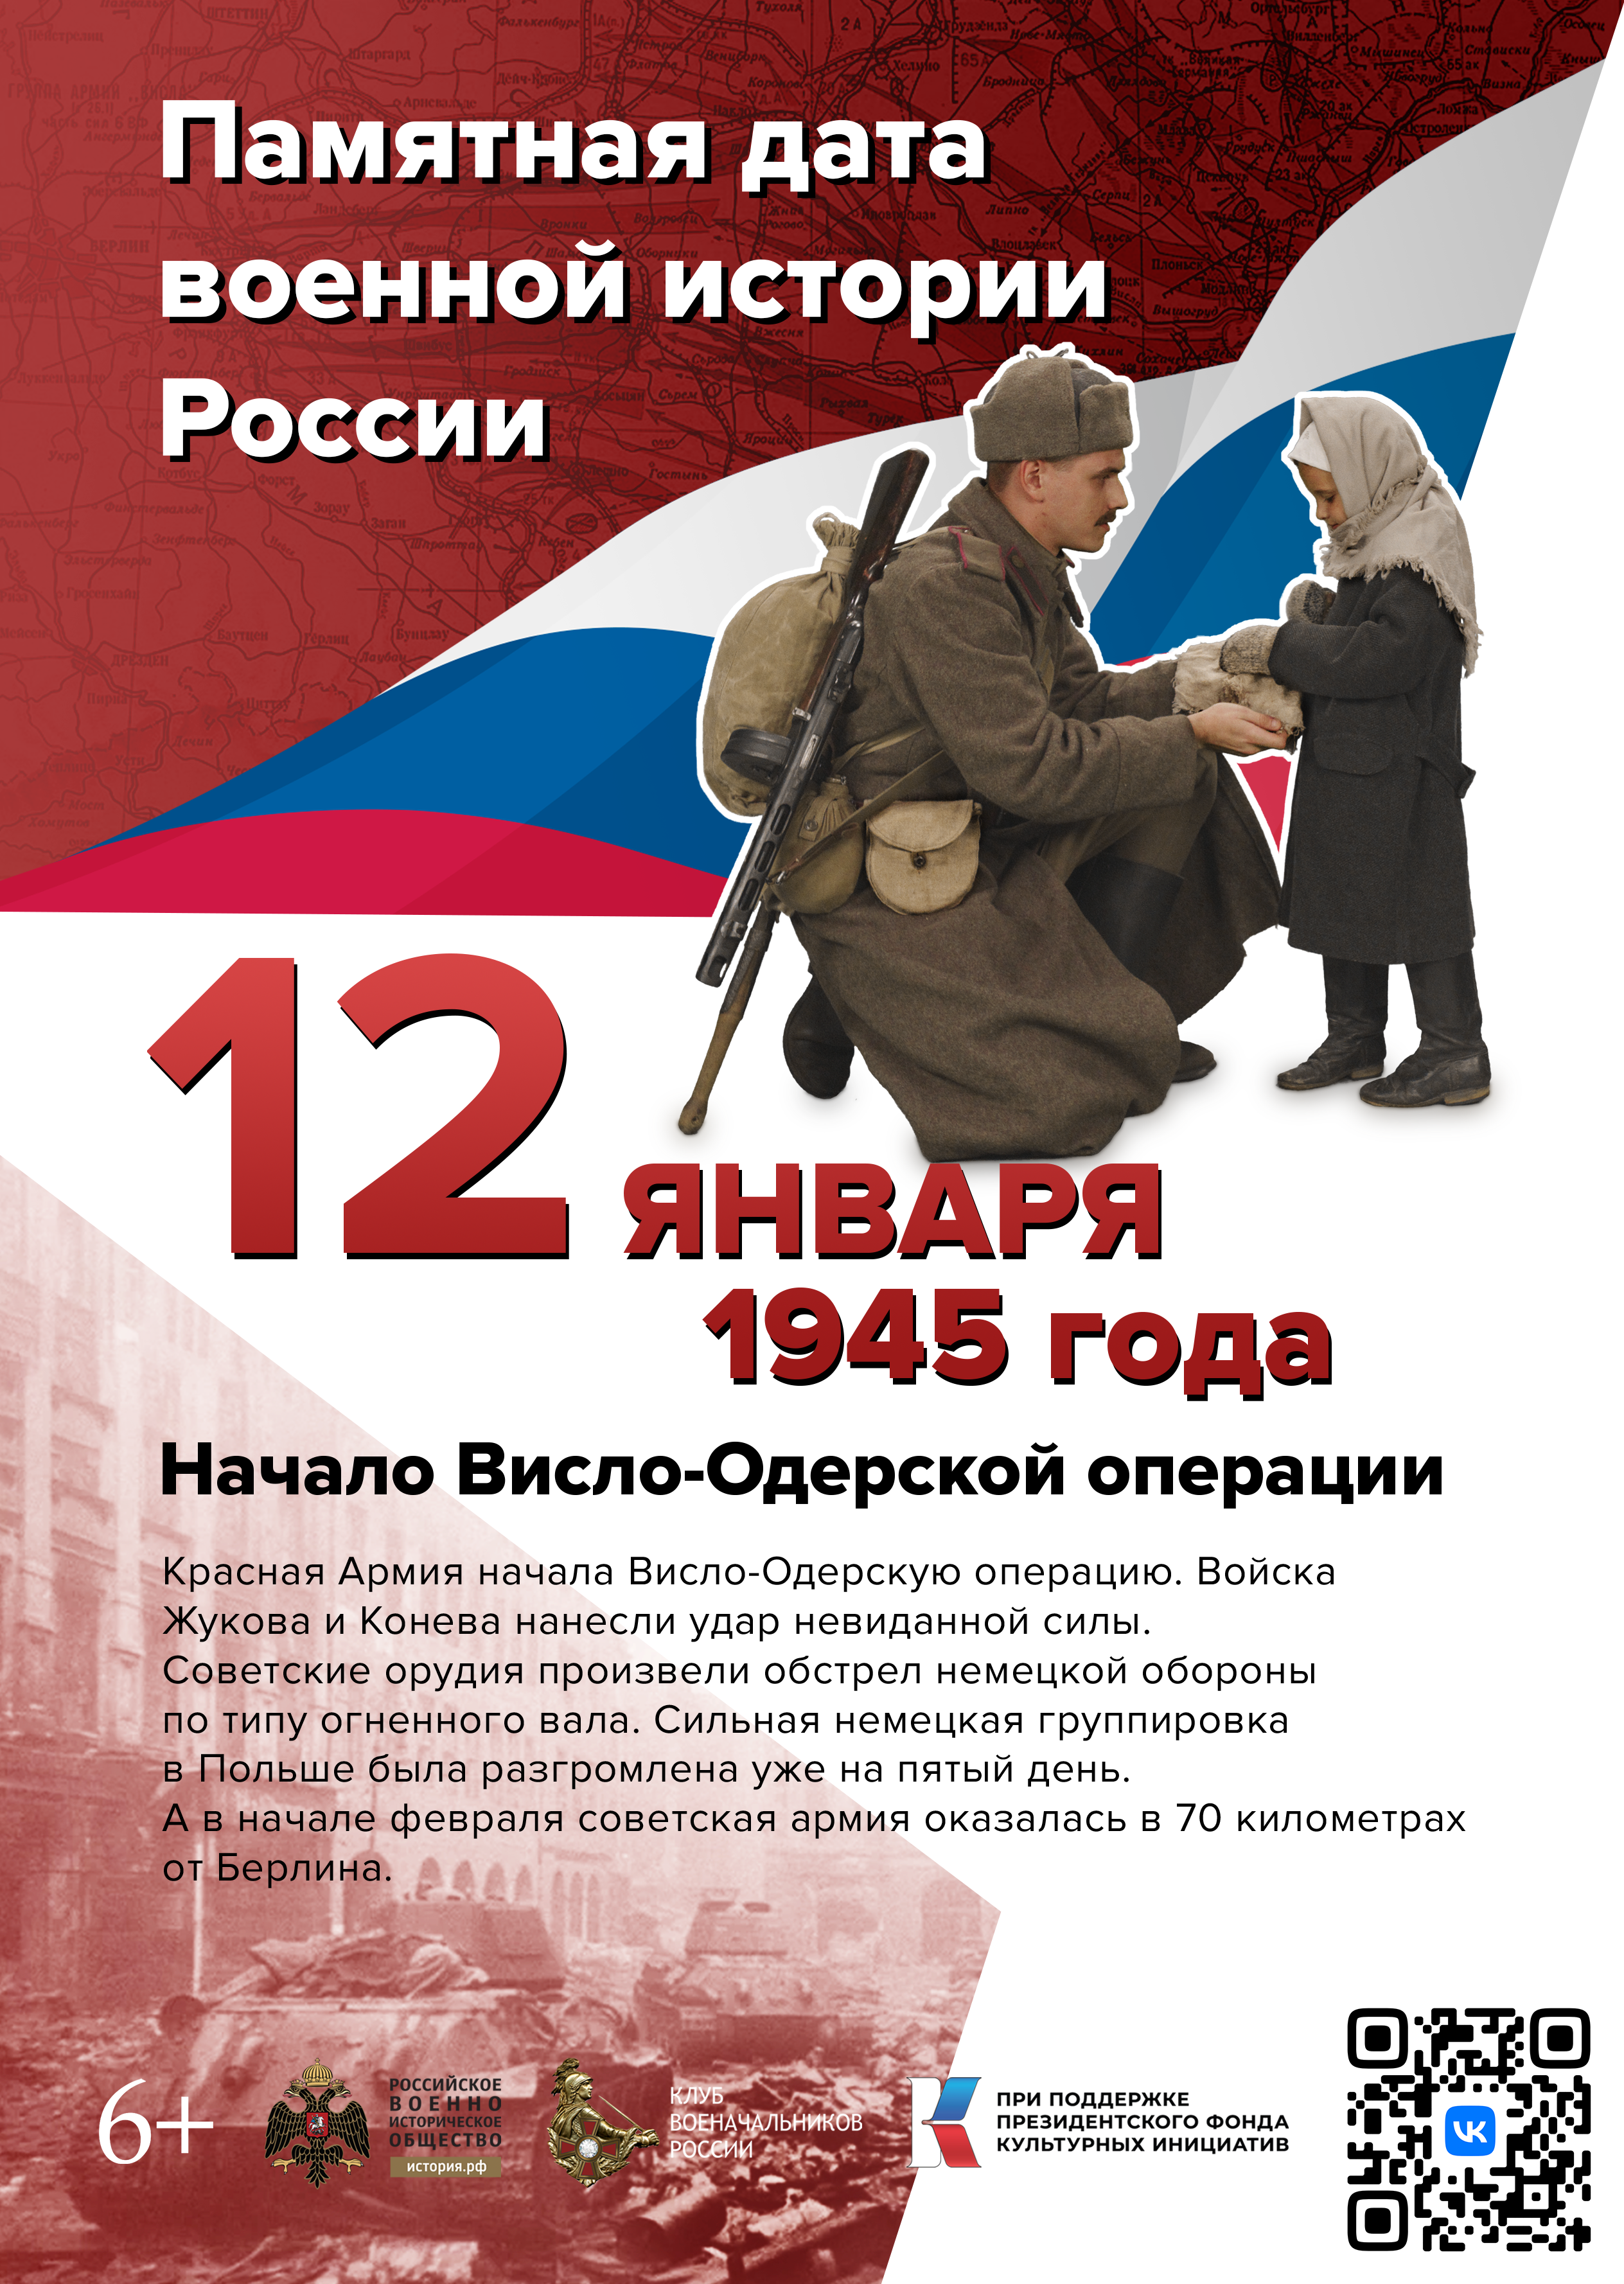 Памятные даты января в военной истории России